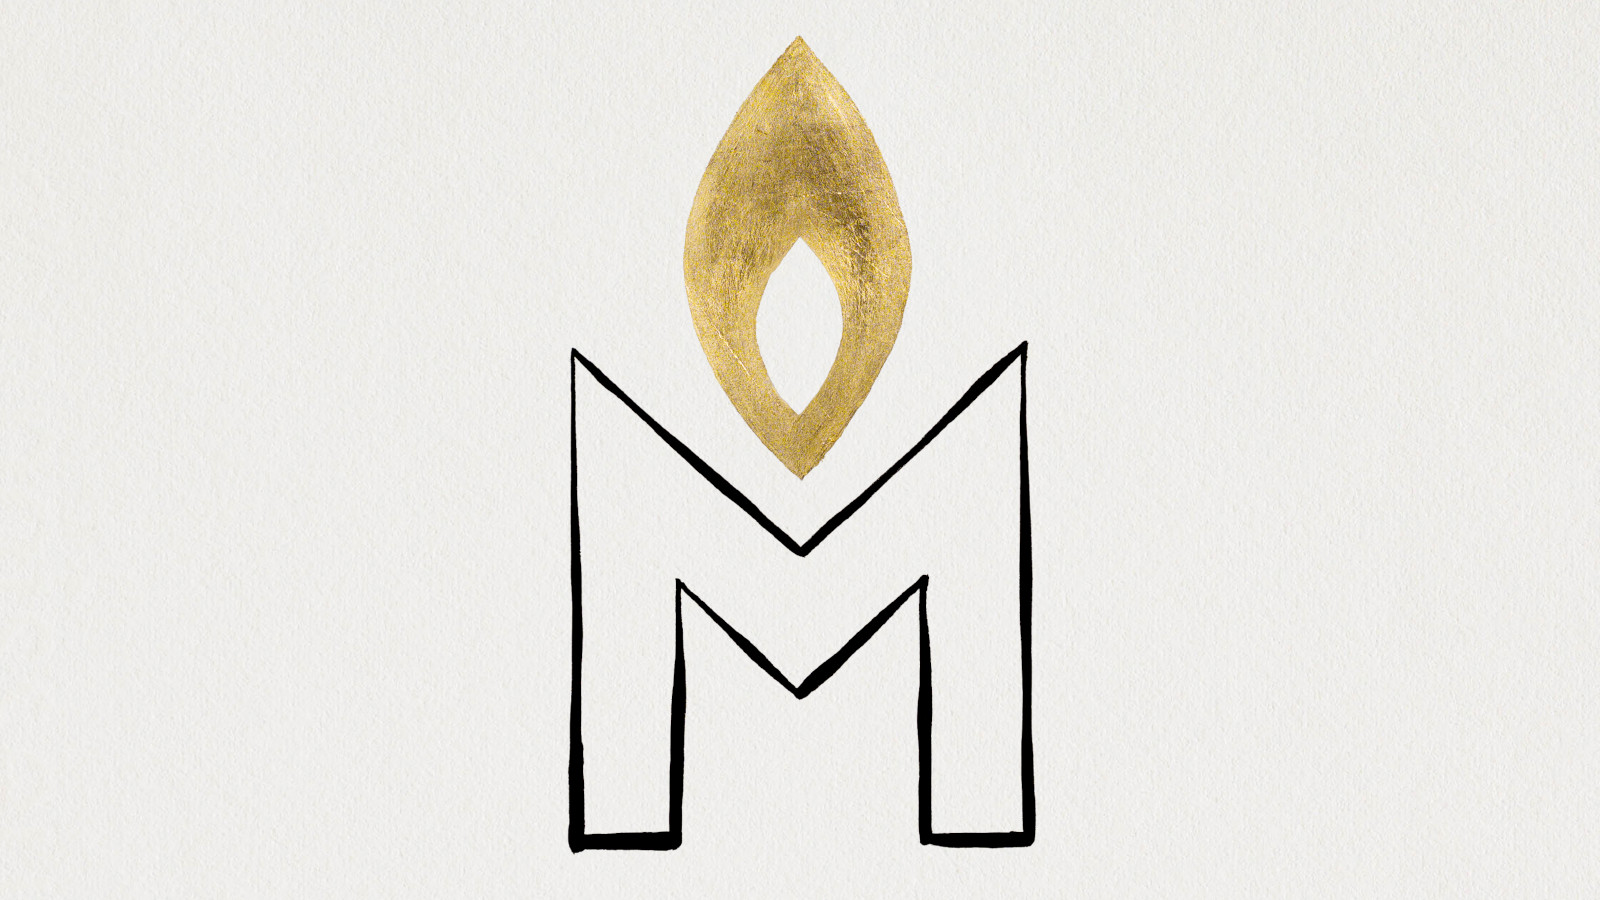 Zeichnung des Buchstabens M mit einer Kerzenflamme darüber